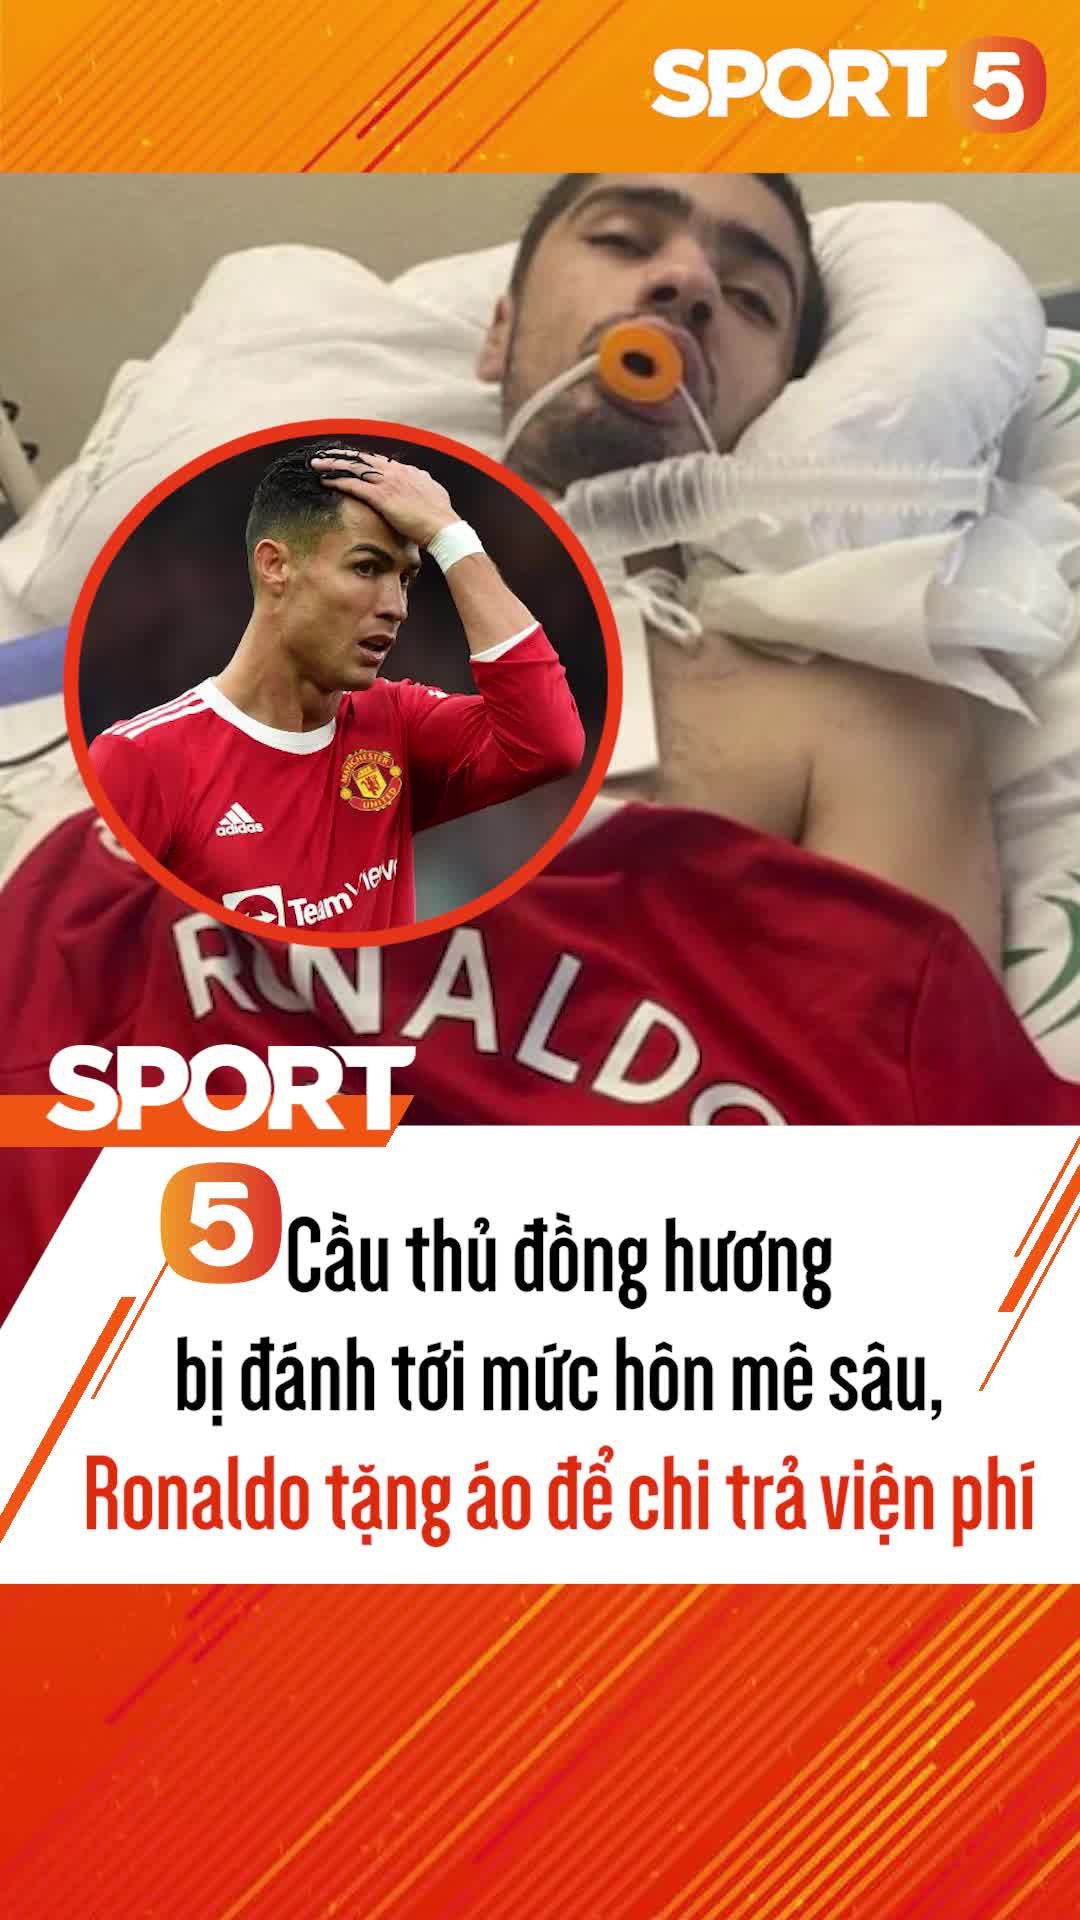 Cầu thủ đồng hương bị đánh tới mức chấn thương sọ não, Ronaldo tặng áo để chi trả viện phí